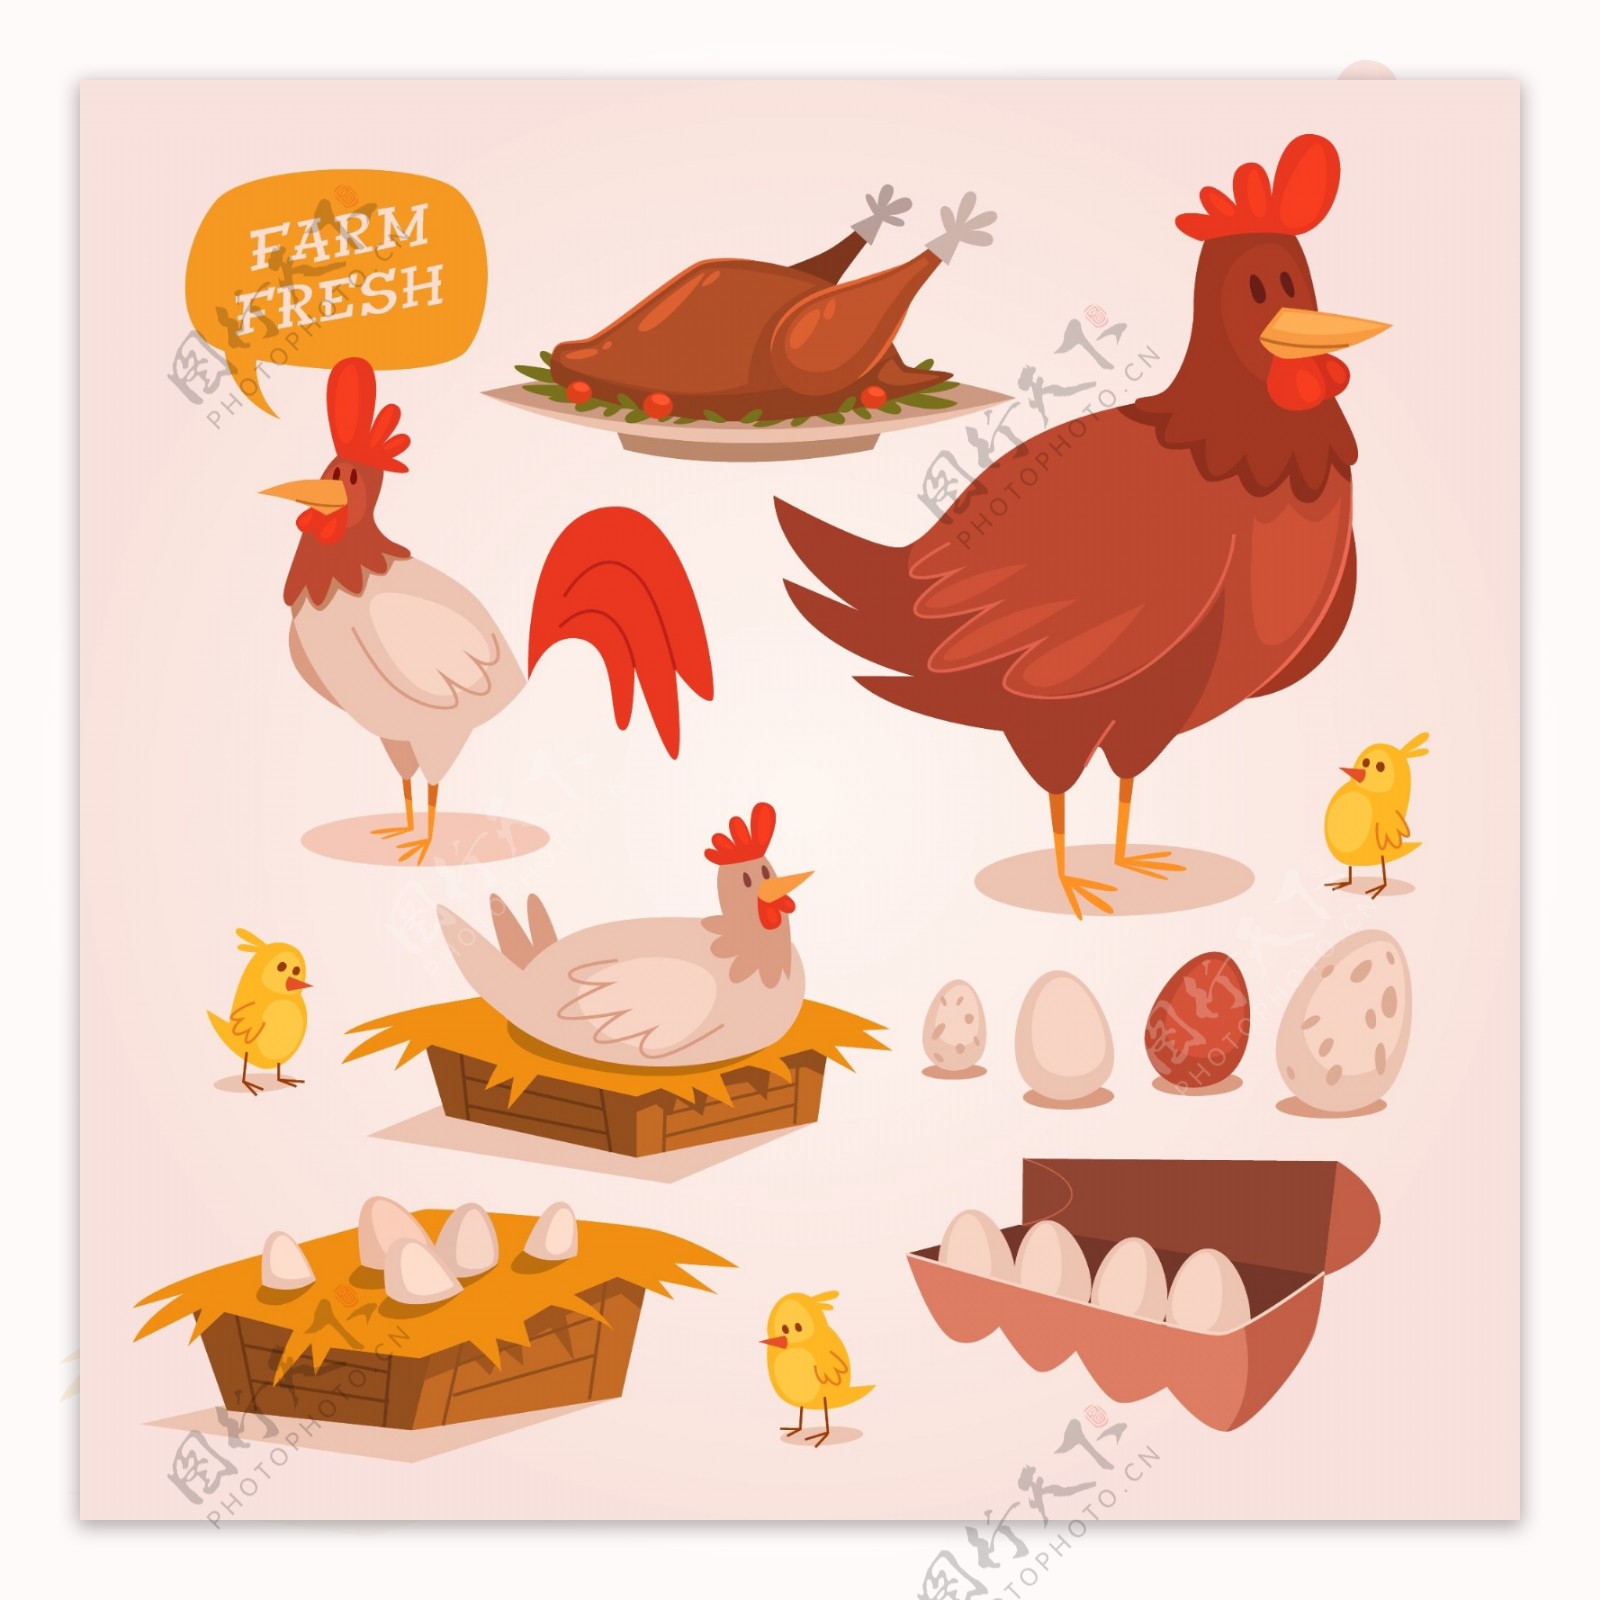 鸡和鸡蛋插画